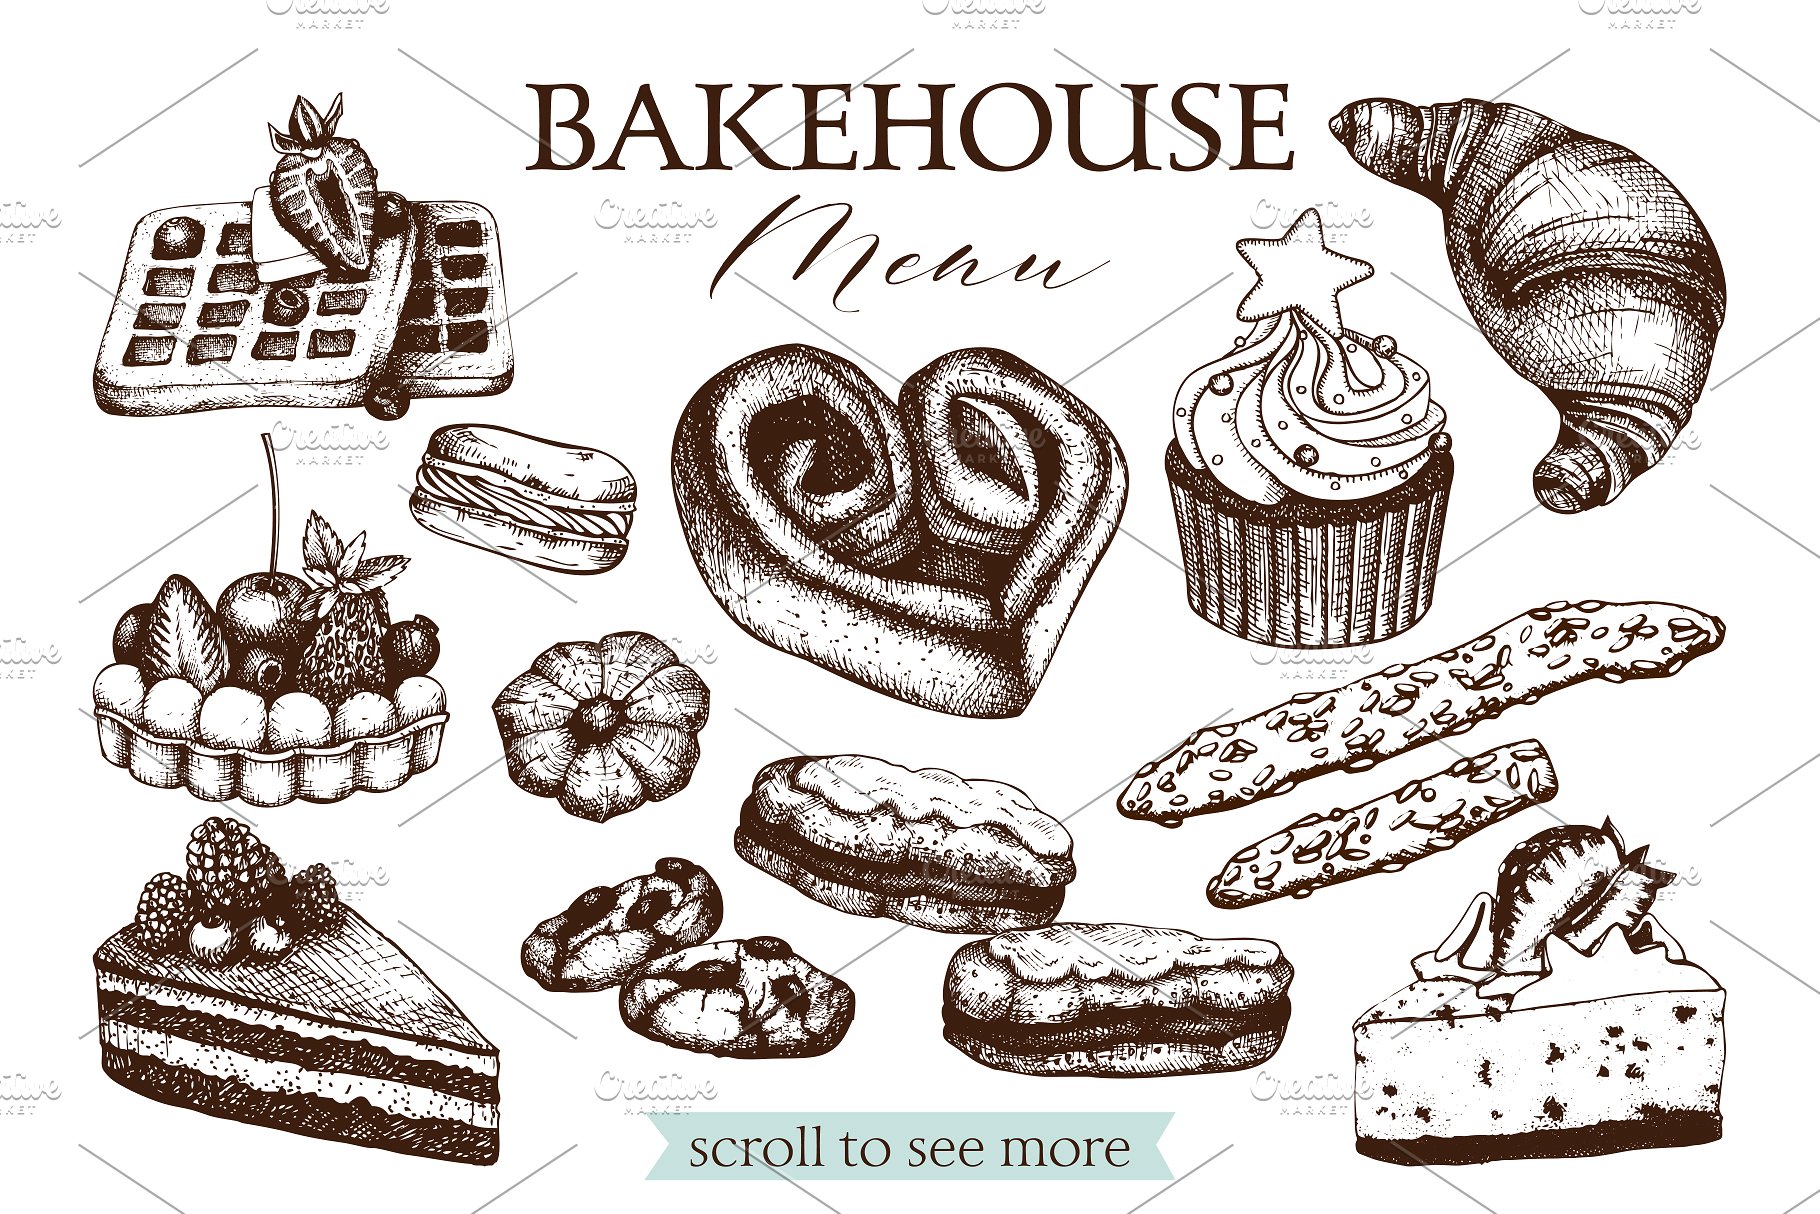 复古面包店手绘素描插画素材合集 Vintage Bakery Menu Designs & Sketch插图(1)